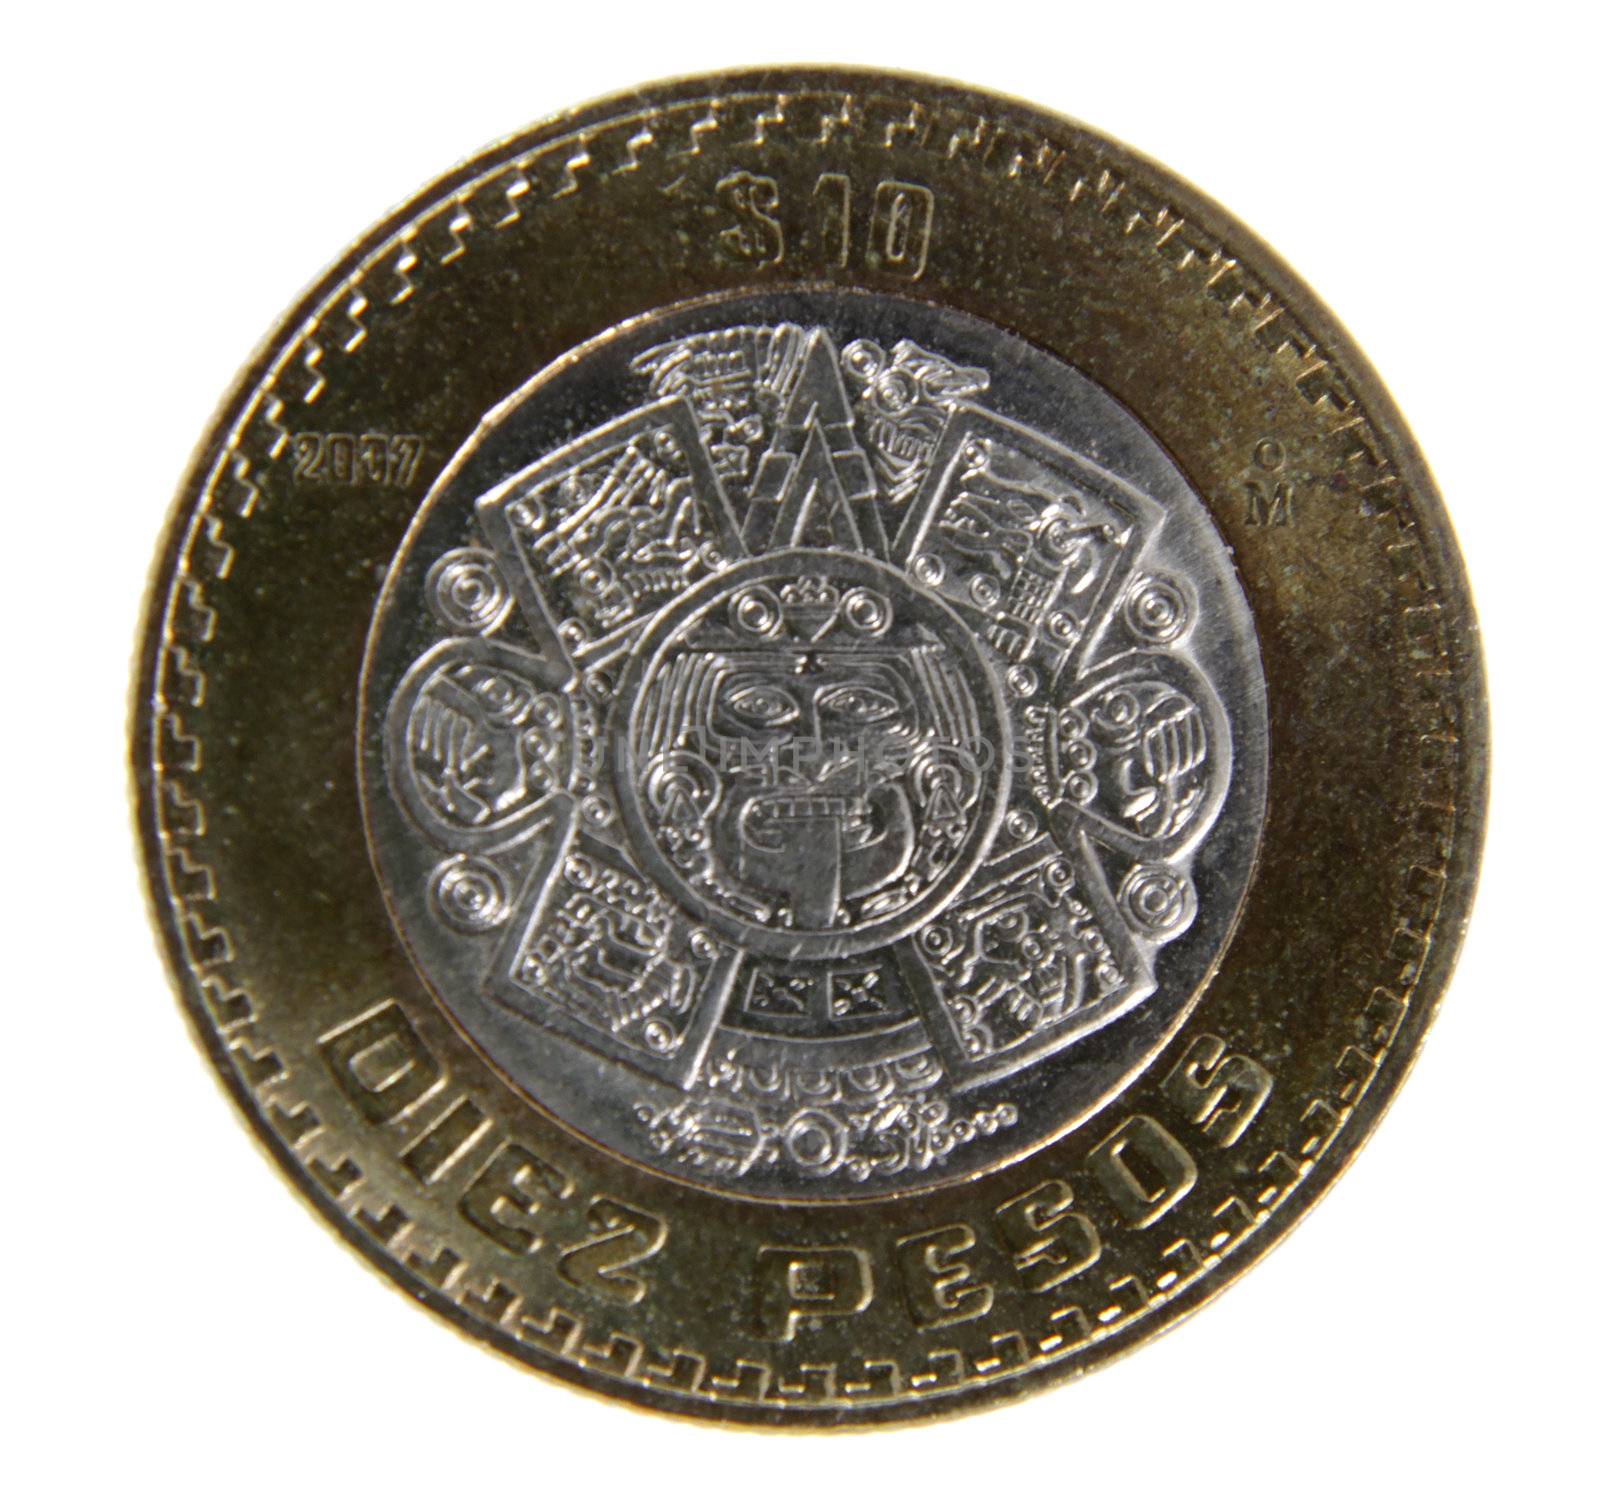 A close-up shot of a Mexican ten peso coin.
